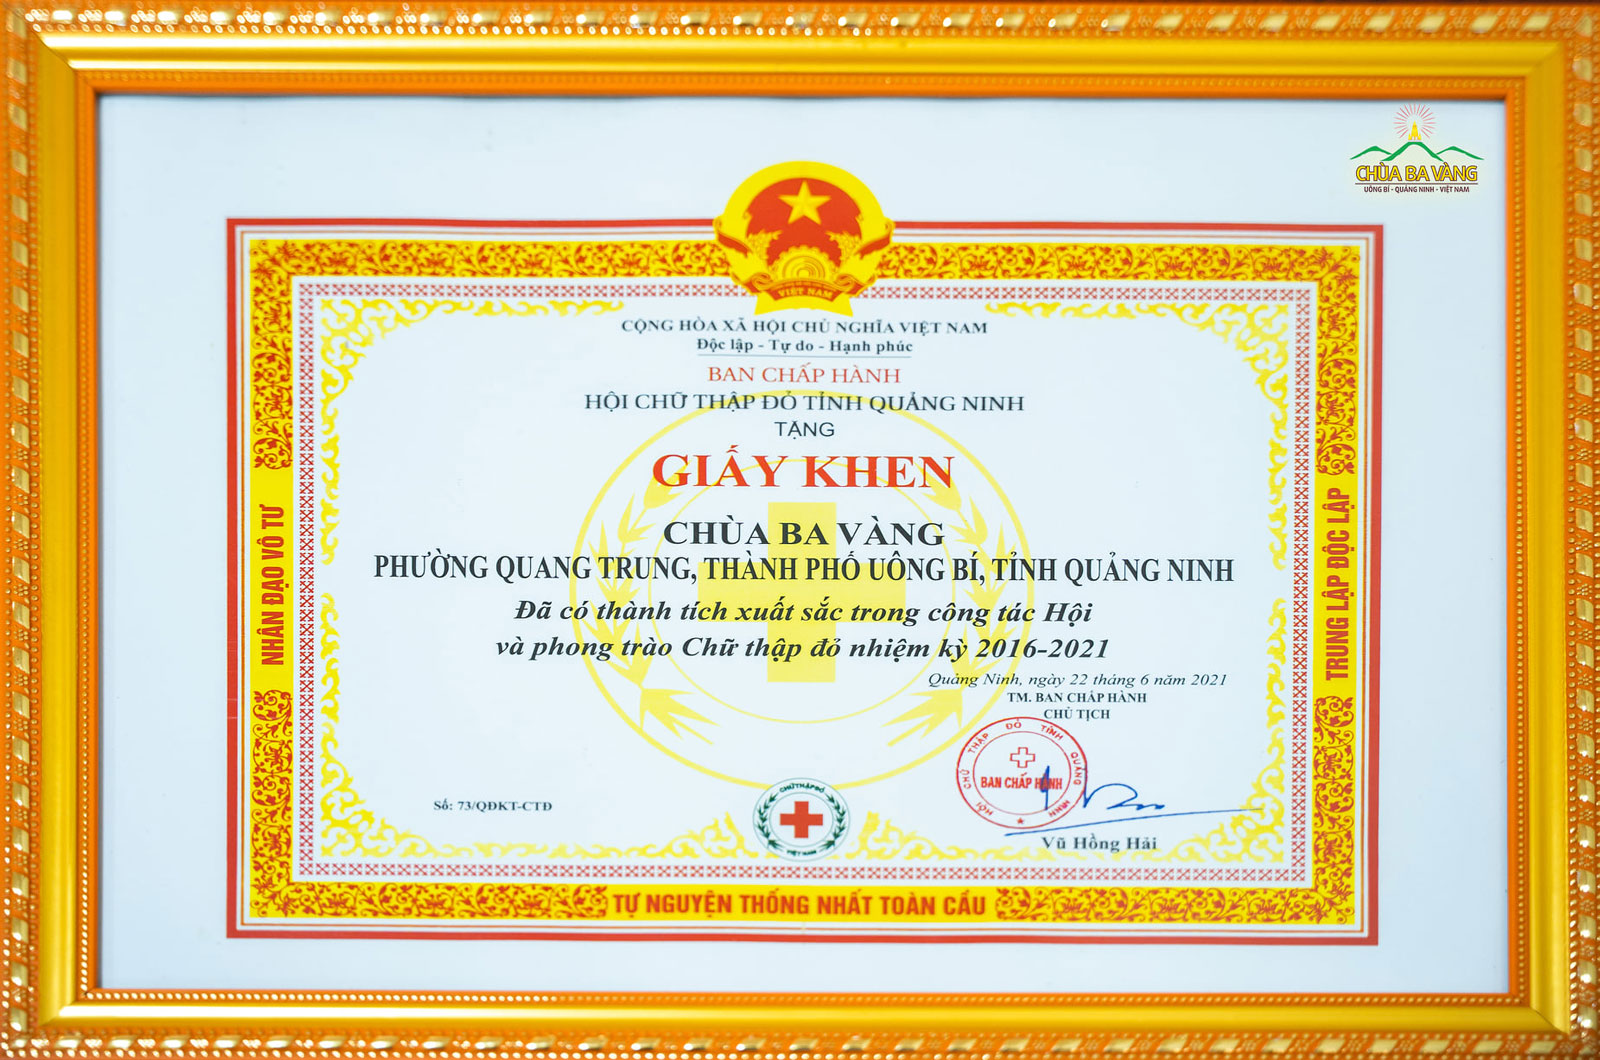 Chùa Ba Vàng đã có thành tích xuất sắc trong công tác Hội và phong trào Chữ thập đỏ của tỉnh Quảng Ninh nhiệm kỳ 2016 - 2021